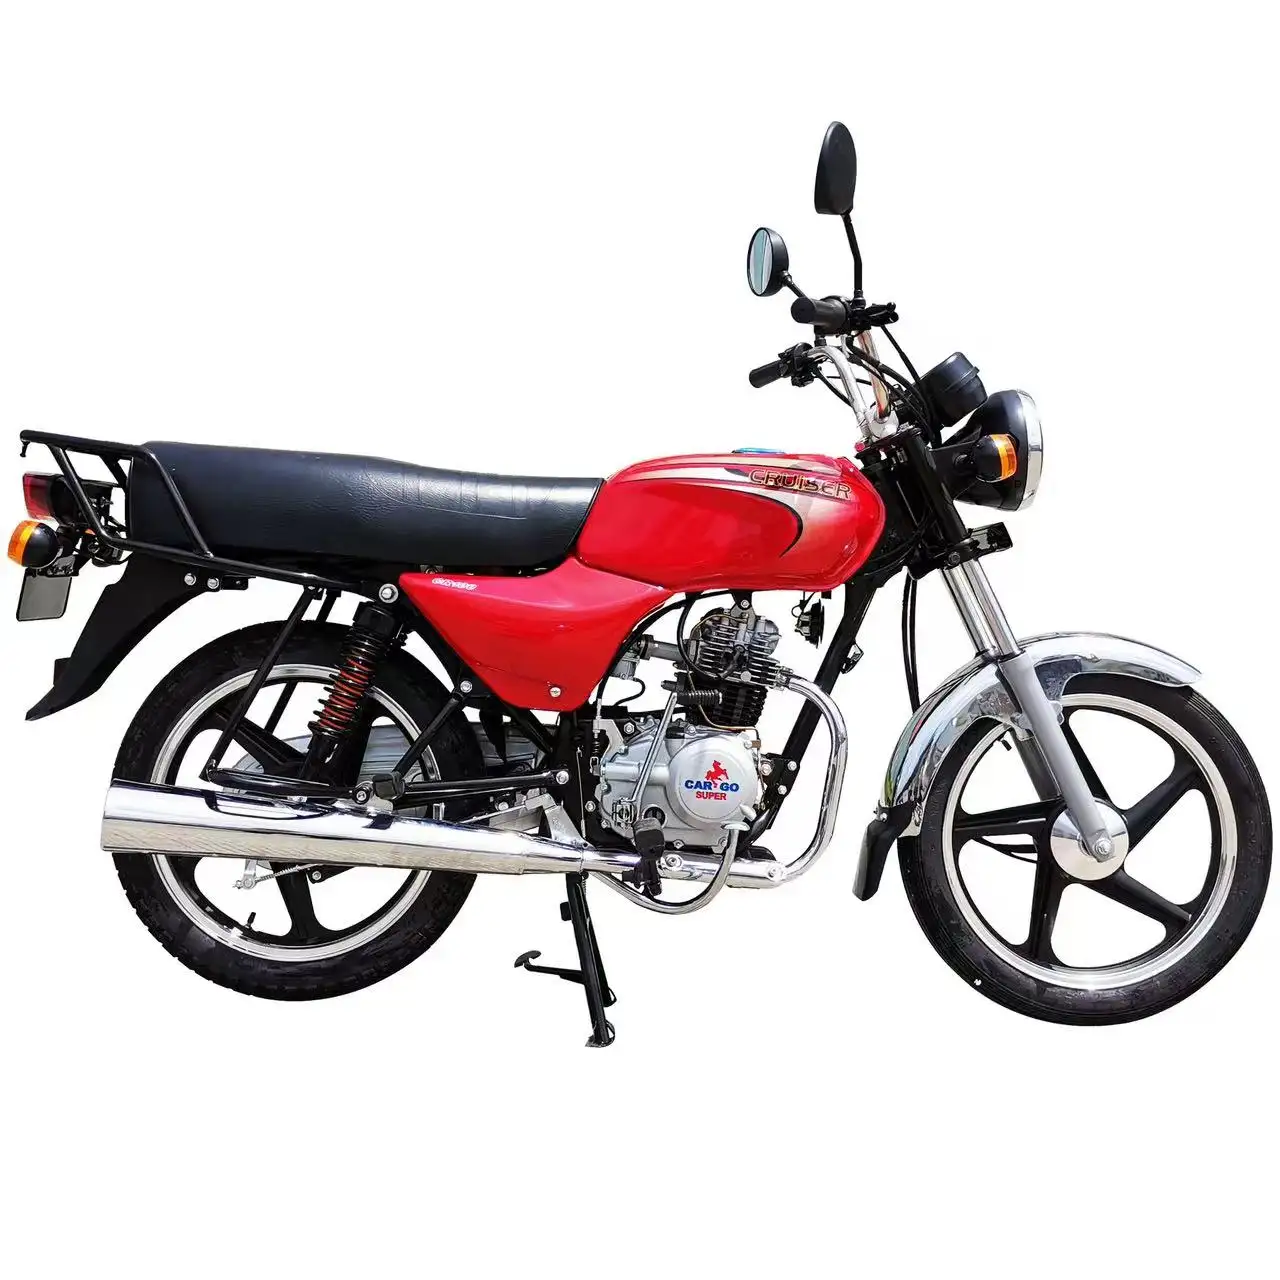 Venda imperdível bicicleta bajaj boxer BM100 de 4 tempos para motocicleta de rua legal de alta qualidade e barata